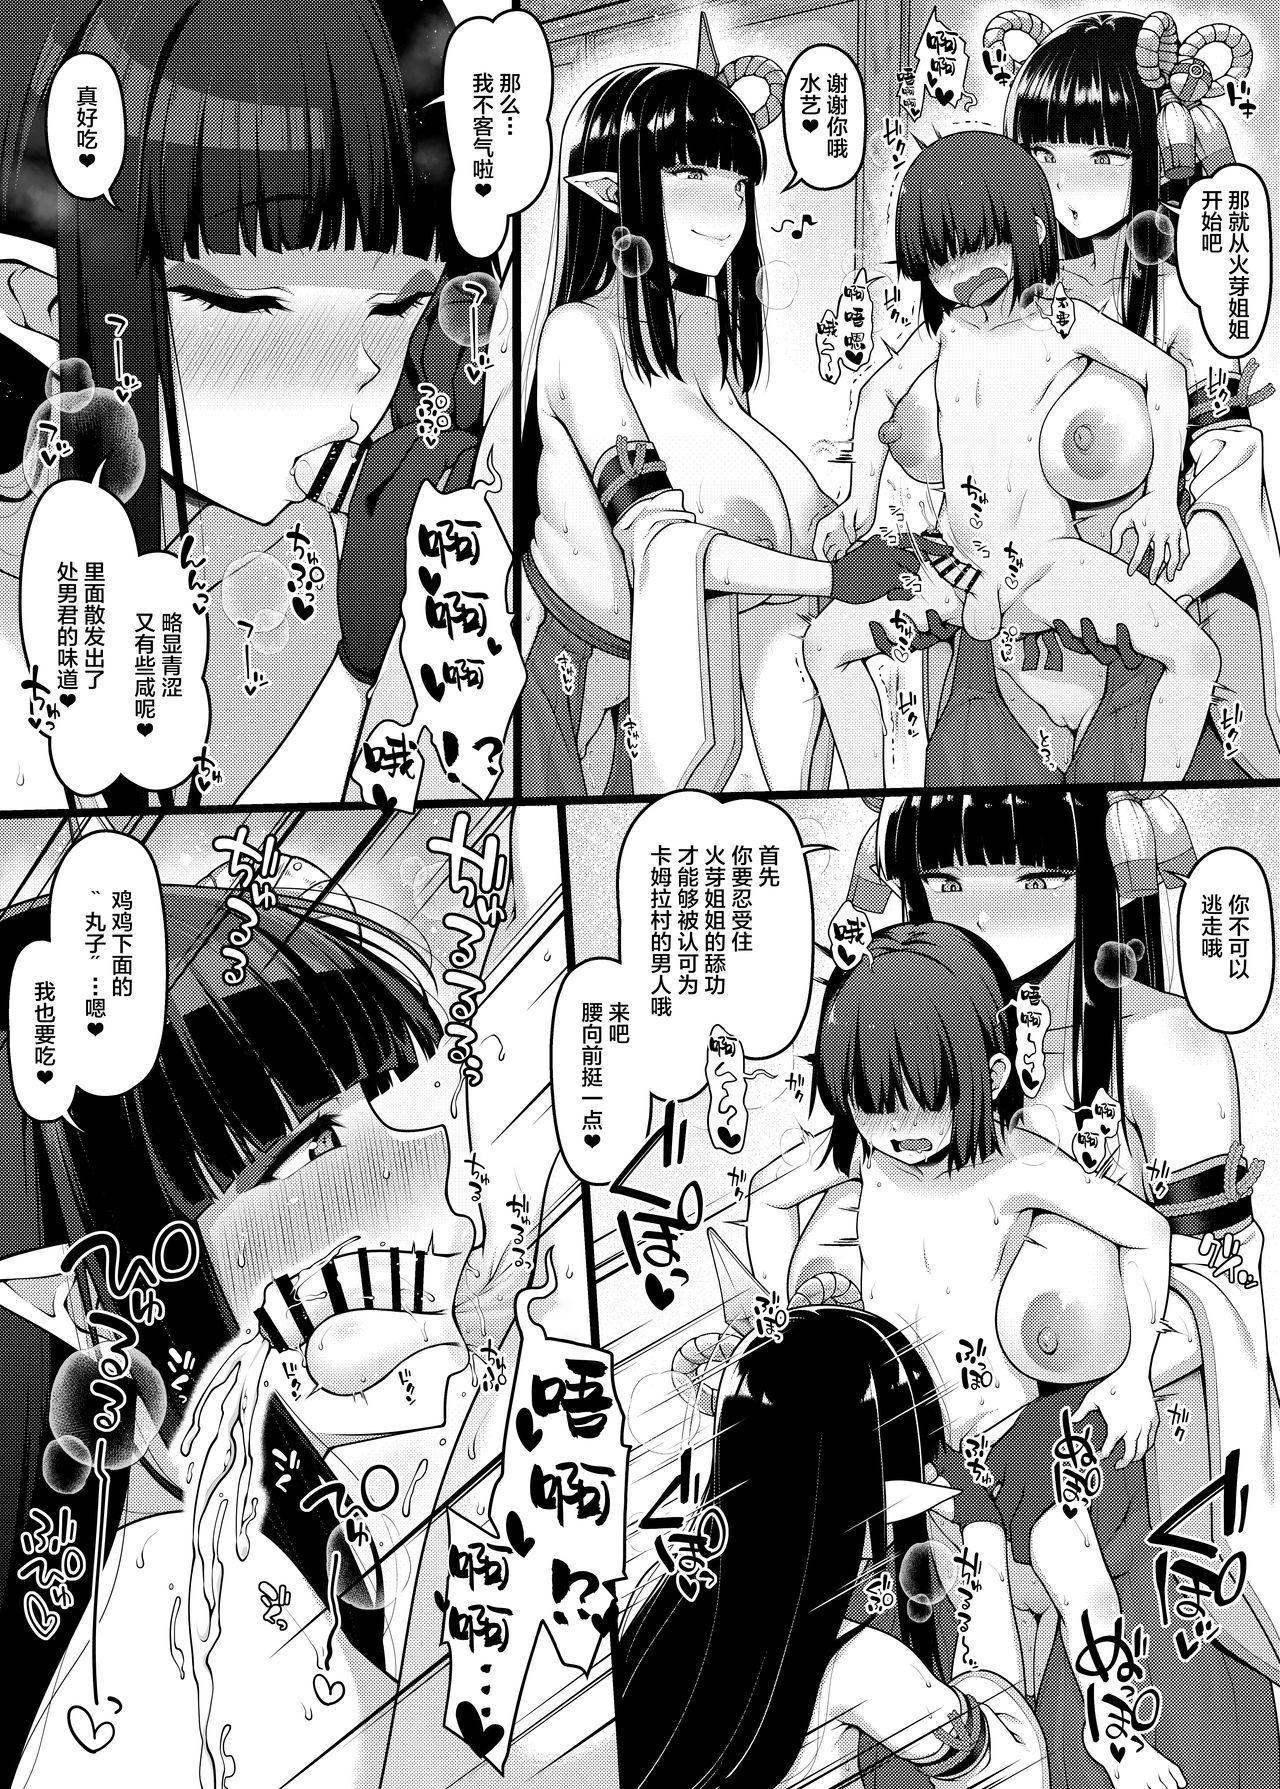 Babysitter Hinoe-neesama to Minoto no Oneeshota Manga - Monster hunter Chacal - Page 2